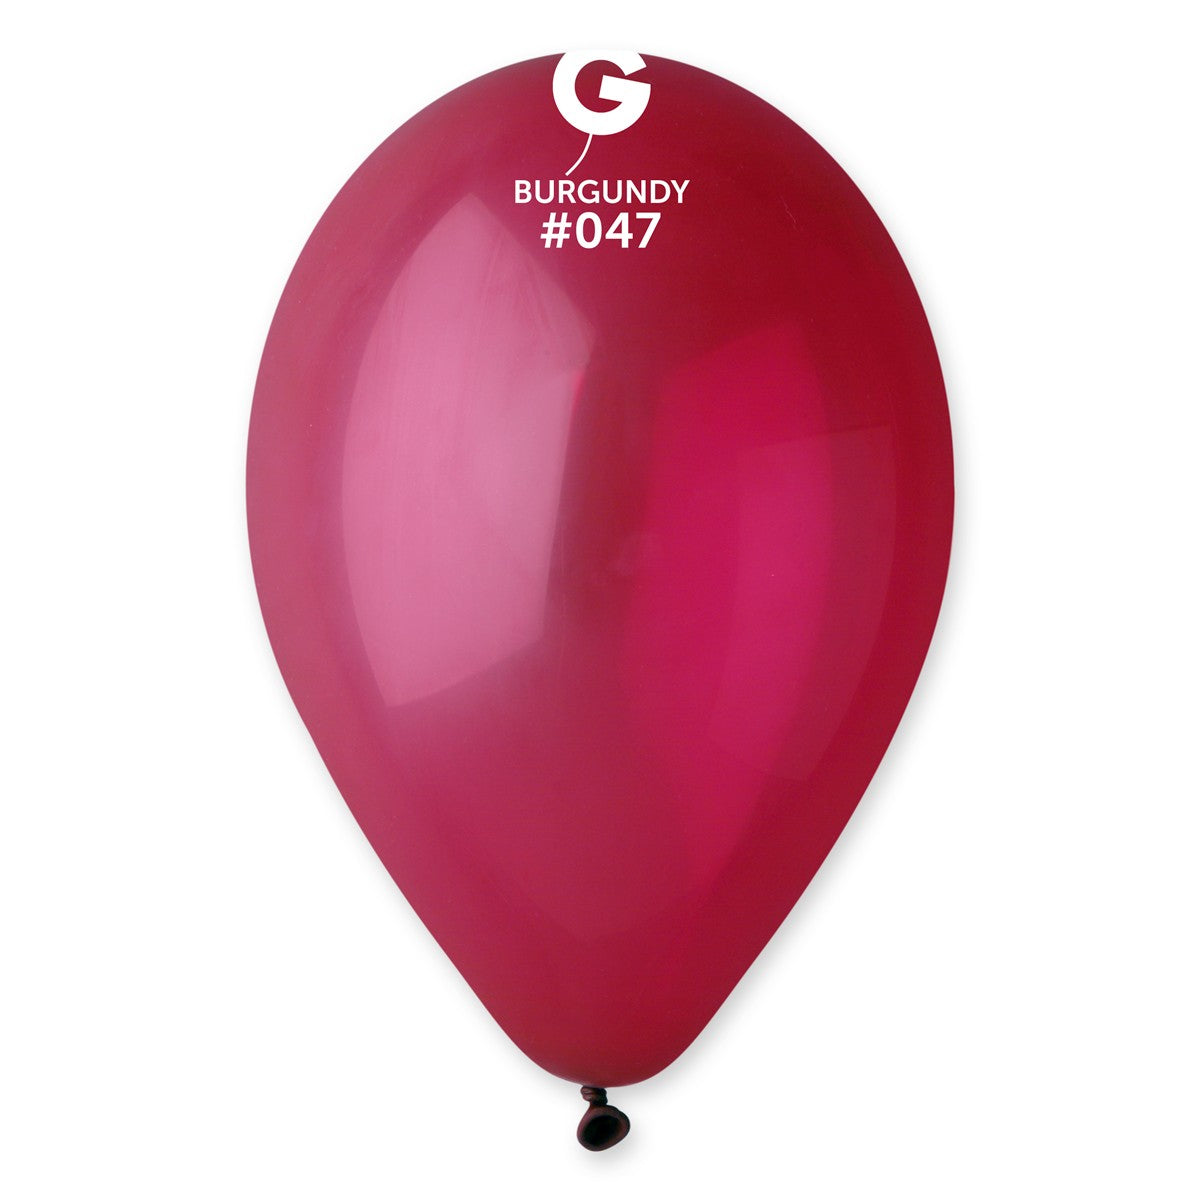 208 pièces Ballon décoratif Noël, Mode en ligne